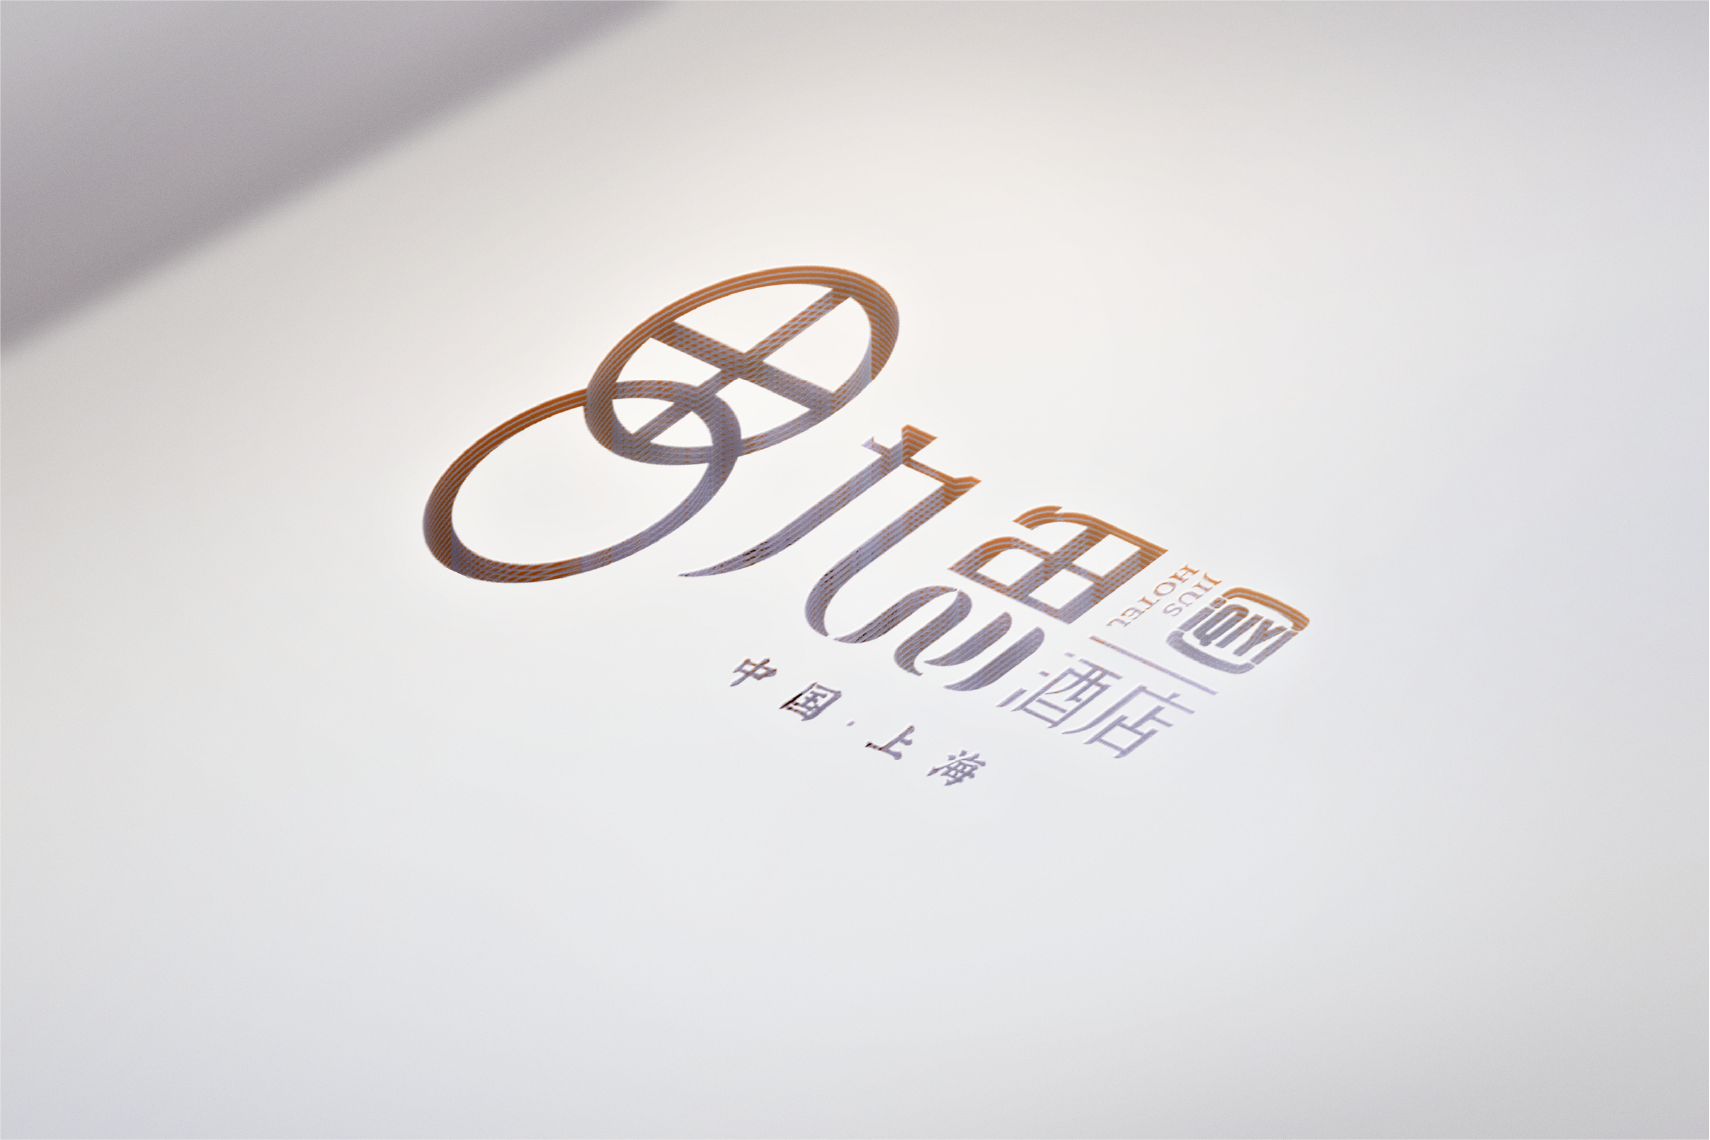 九思酒店形象设计/品牌logo/vi设计升级/商标设计/标志平面设计